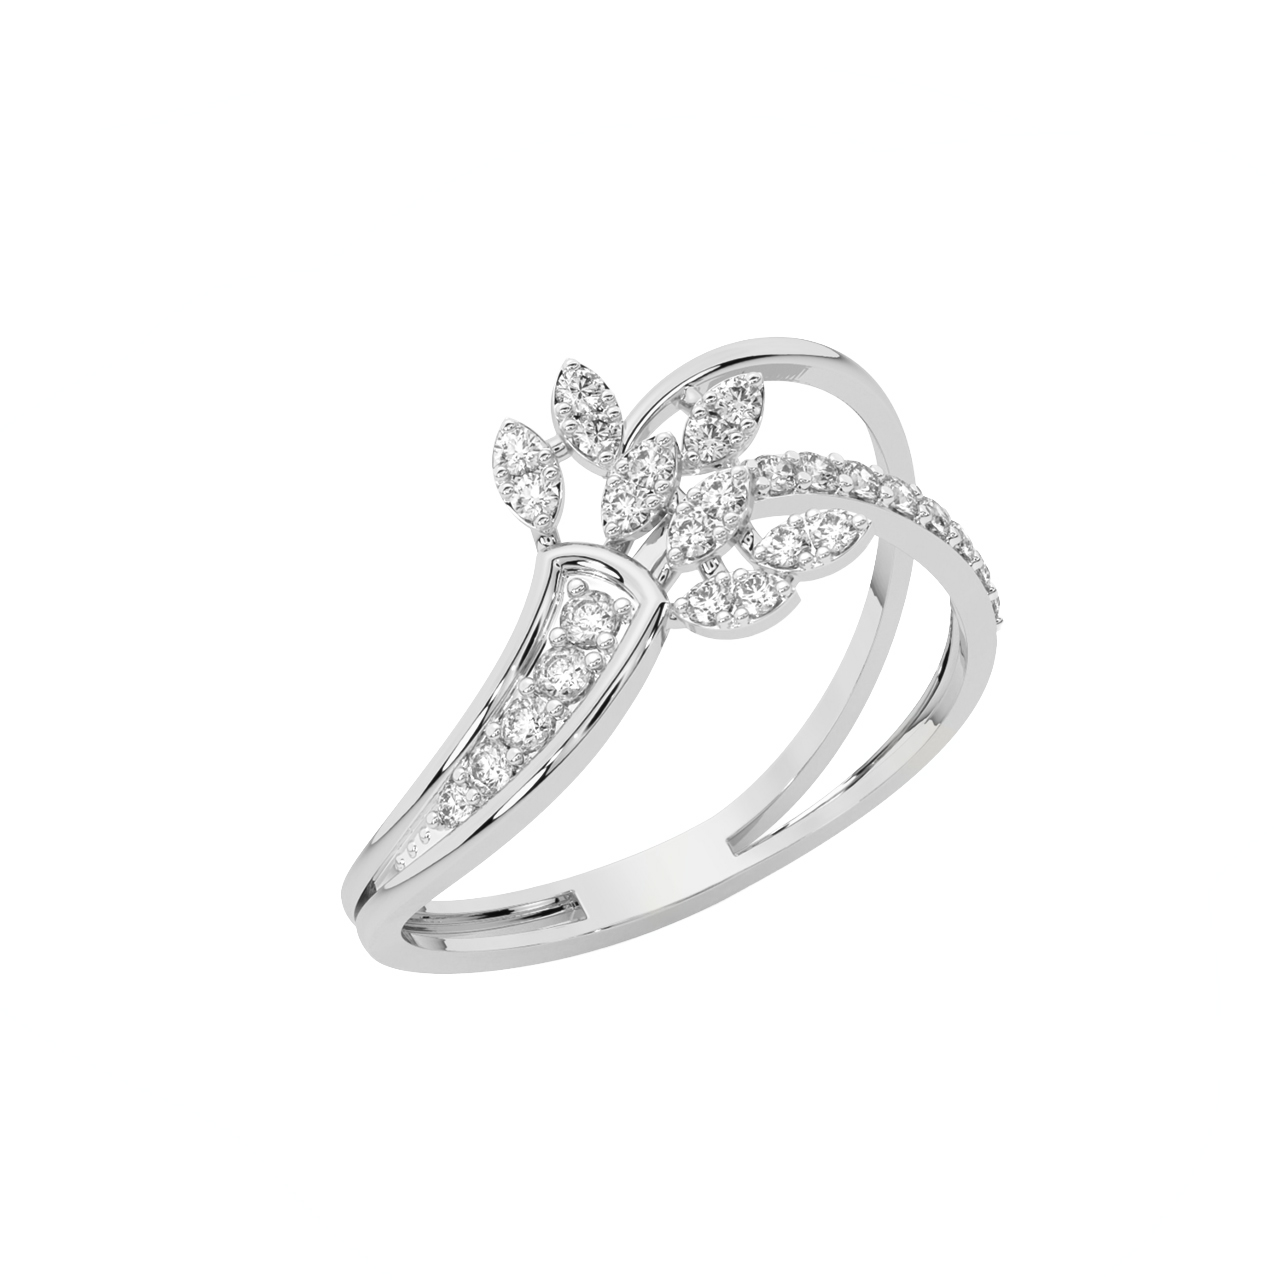 The Fern Coast Diamond Ring